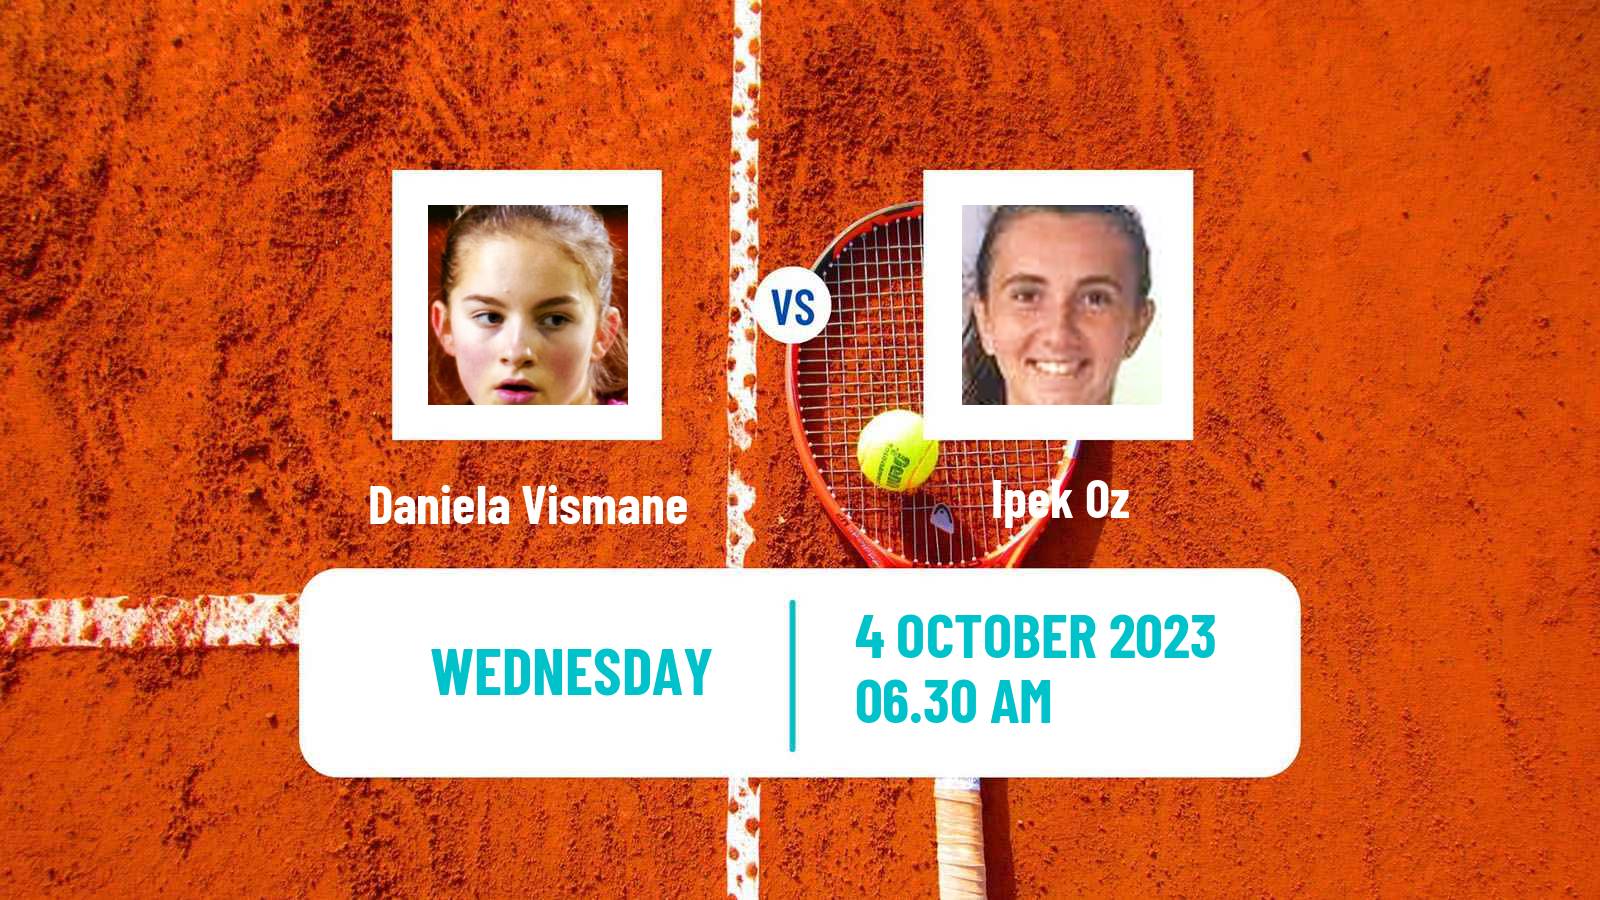 Tennis ITF W40 Lisbon Women Daniela Vismane - Ipek Oz